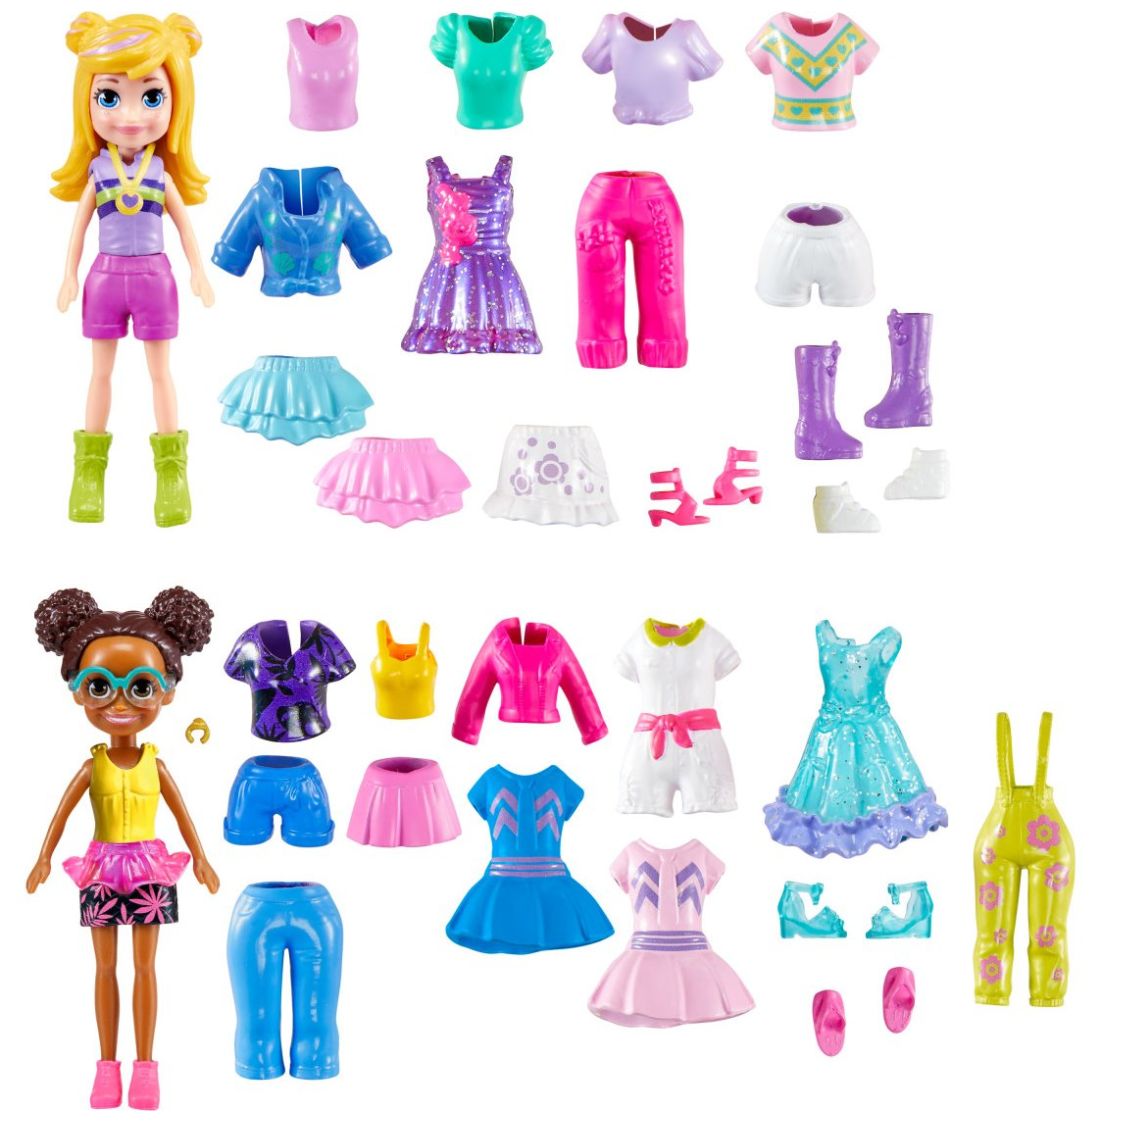 Juguetes para Niñas - Barbie, Polly Pocket, LoL, Pulseras y accesorios